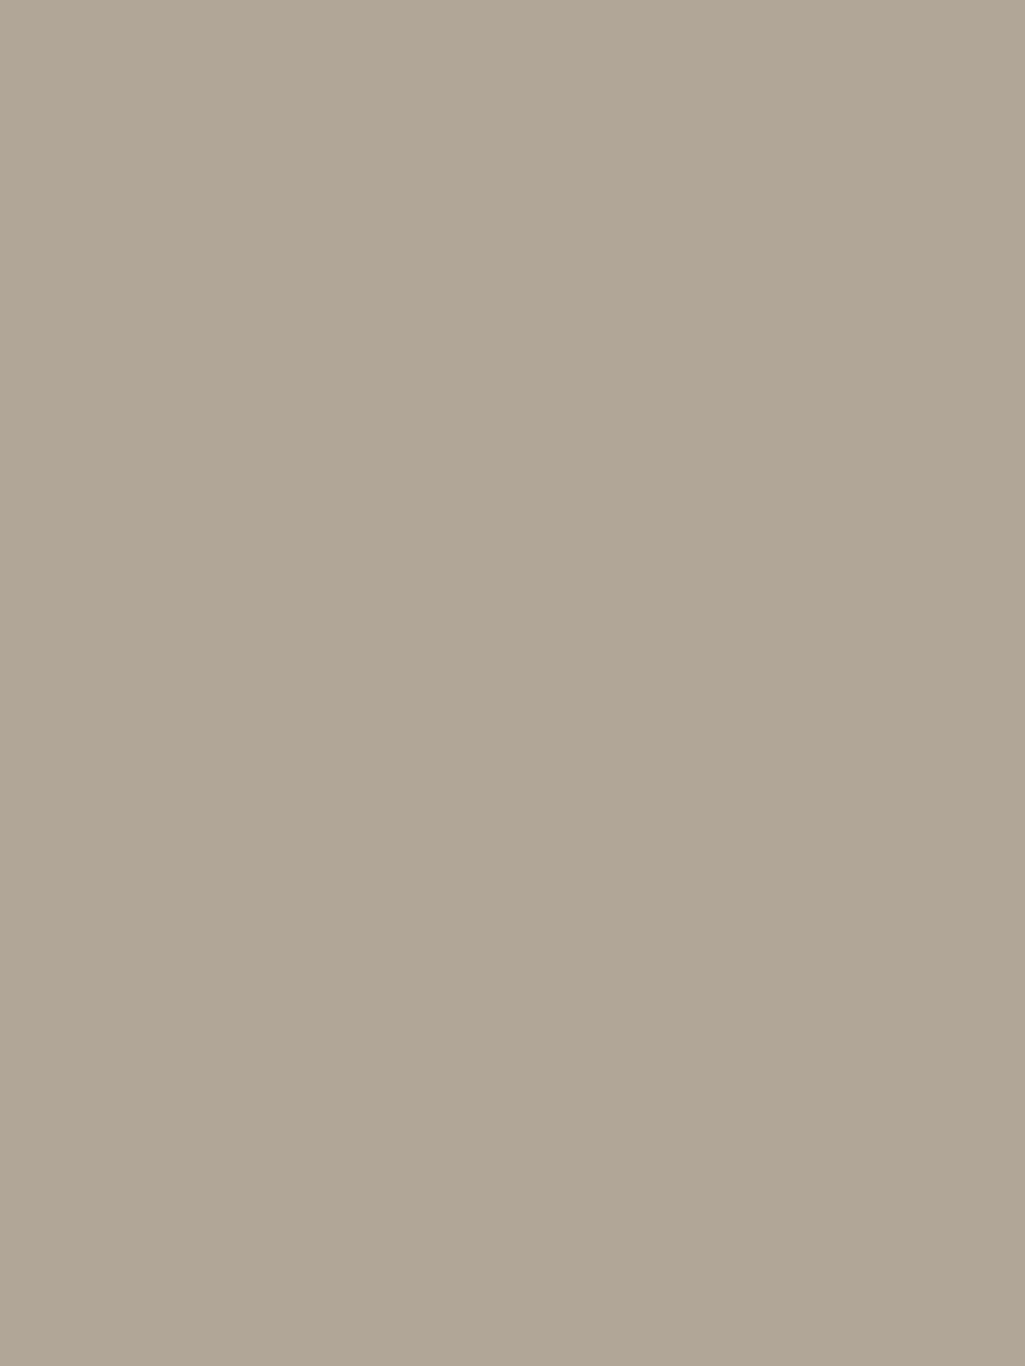 Рисунок для вышивки из серии «Премия к глицериновому мылу Брокар и Ко». 1890 год. Александровский художественно-краеведческий музей, Александров, Владимирская область